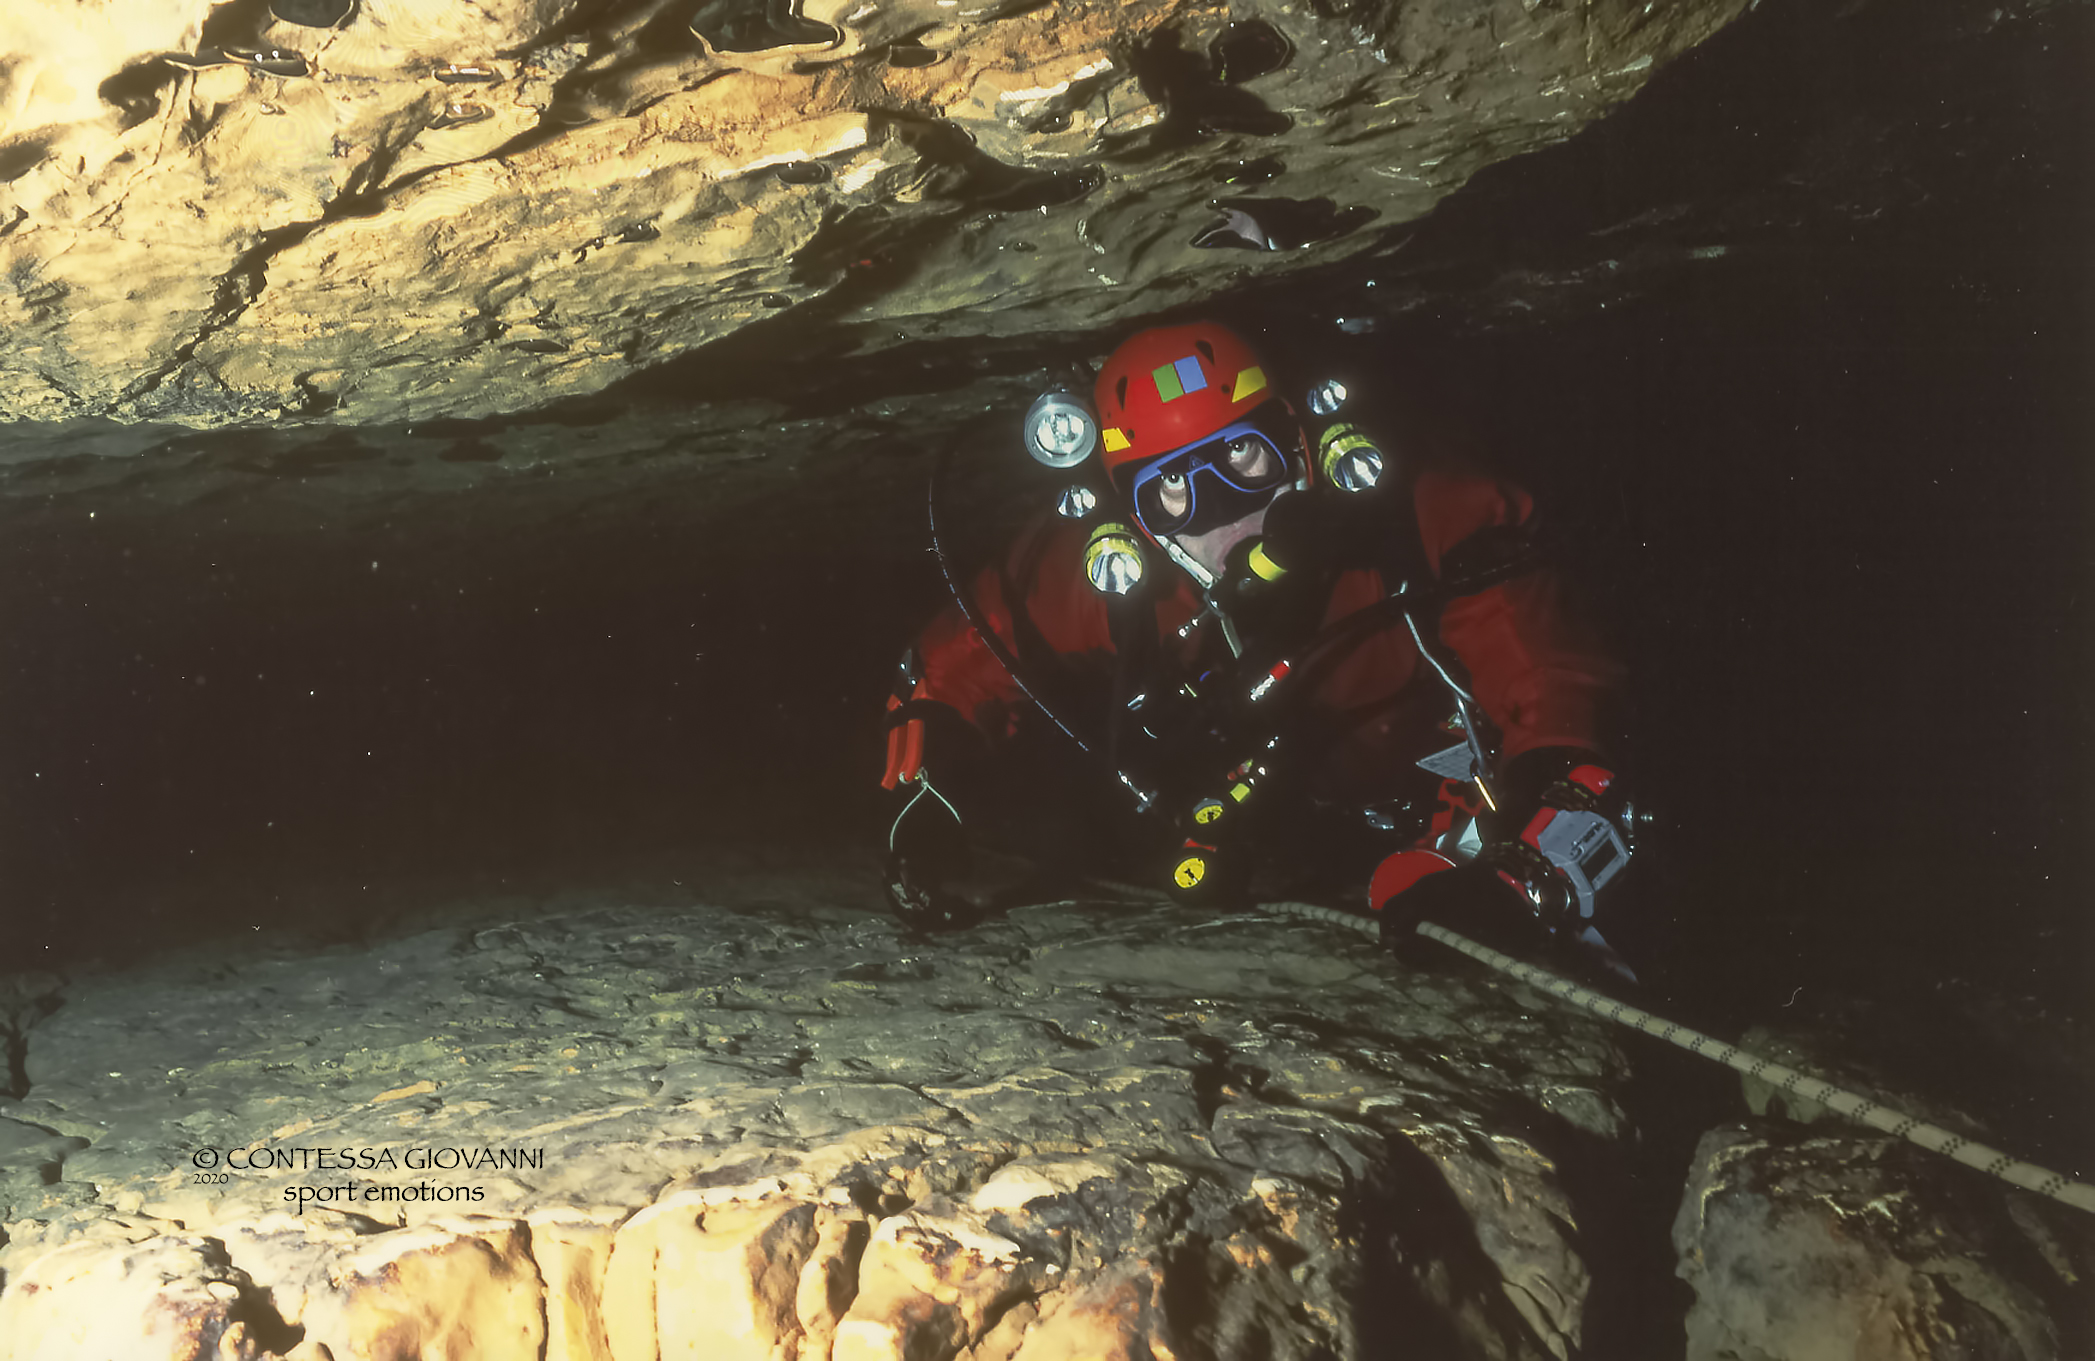 Speleosub cave diving...